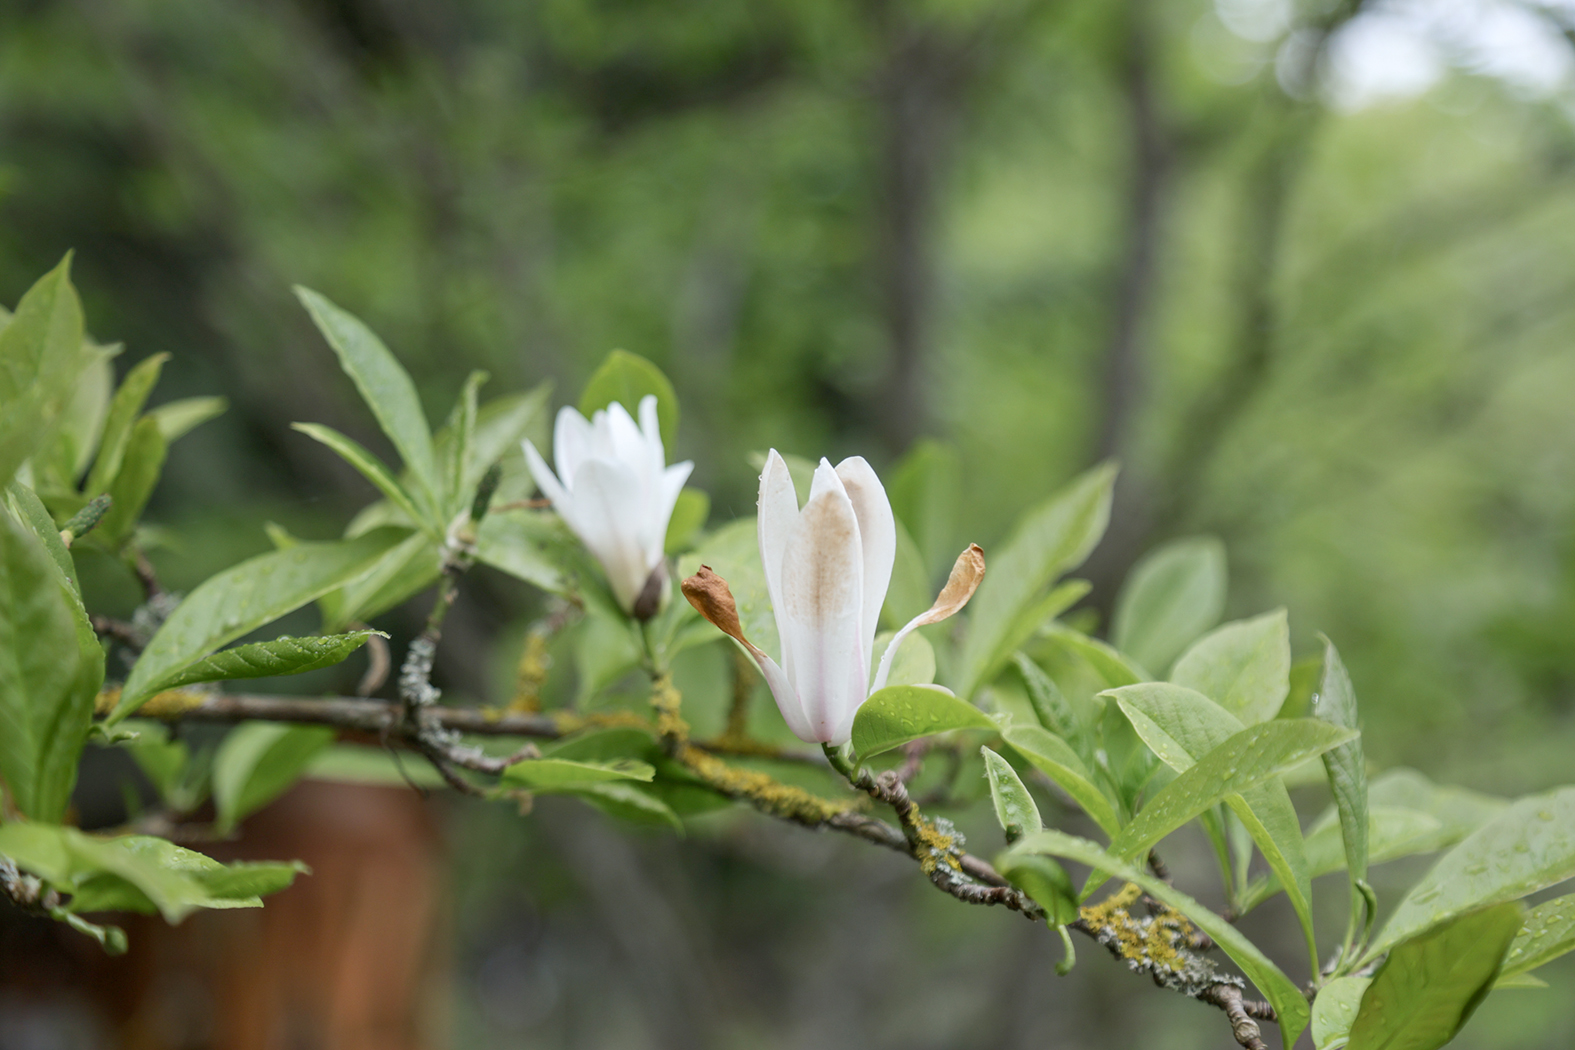 magnolijos